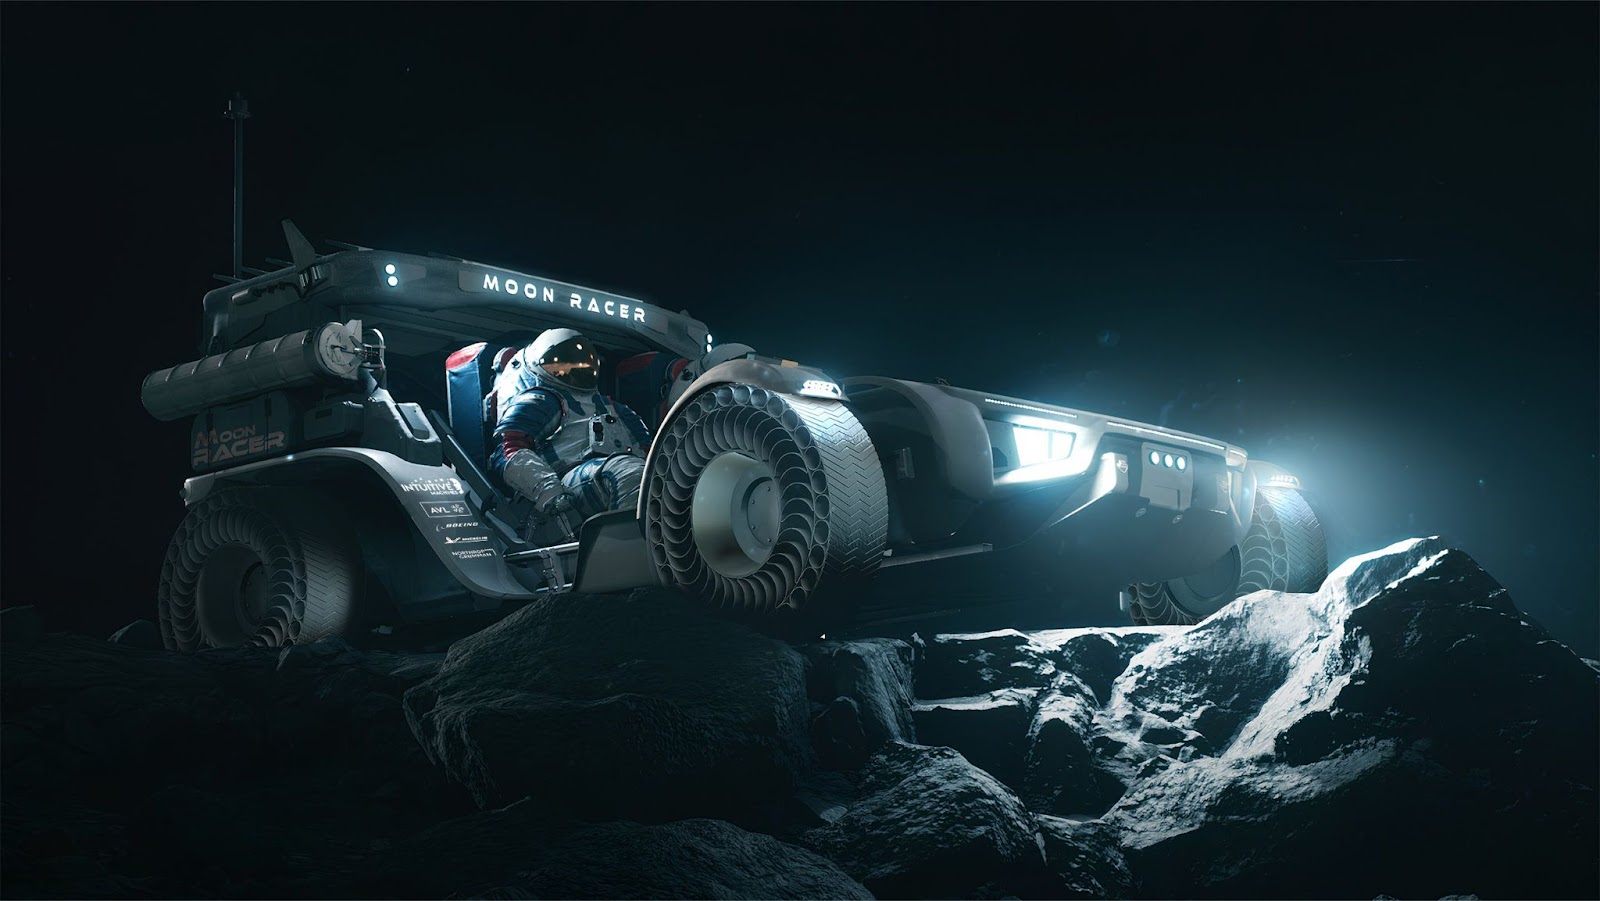 Un astronauta conduce un módulo lunar futurista sobre un terreno lunar rocoso por la noche, iluminado por los faros del vehículo.